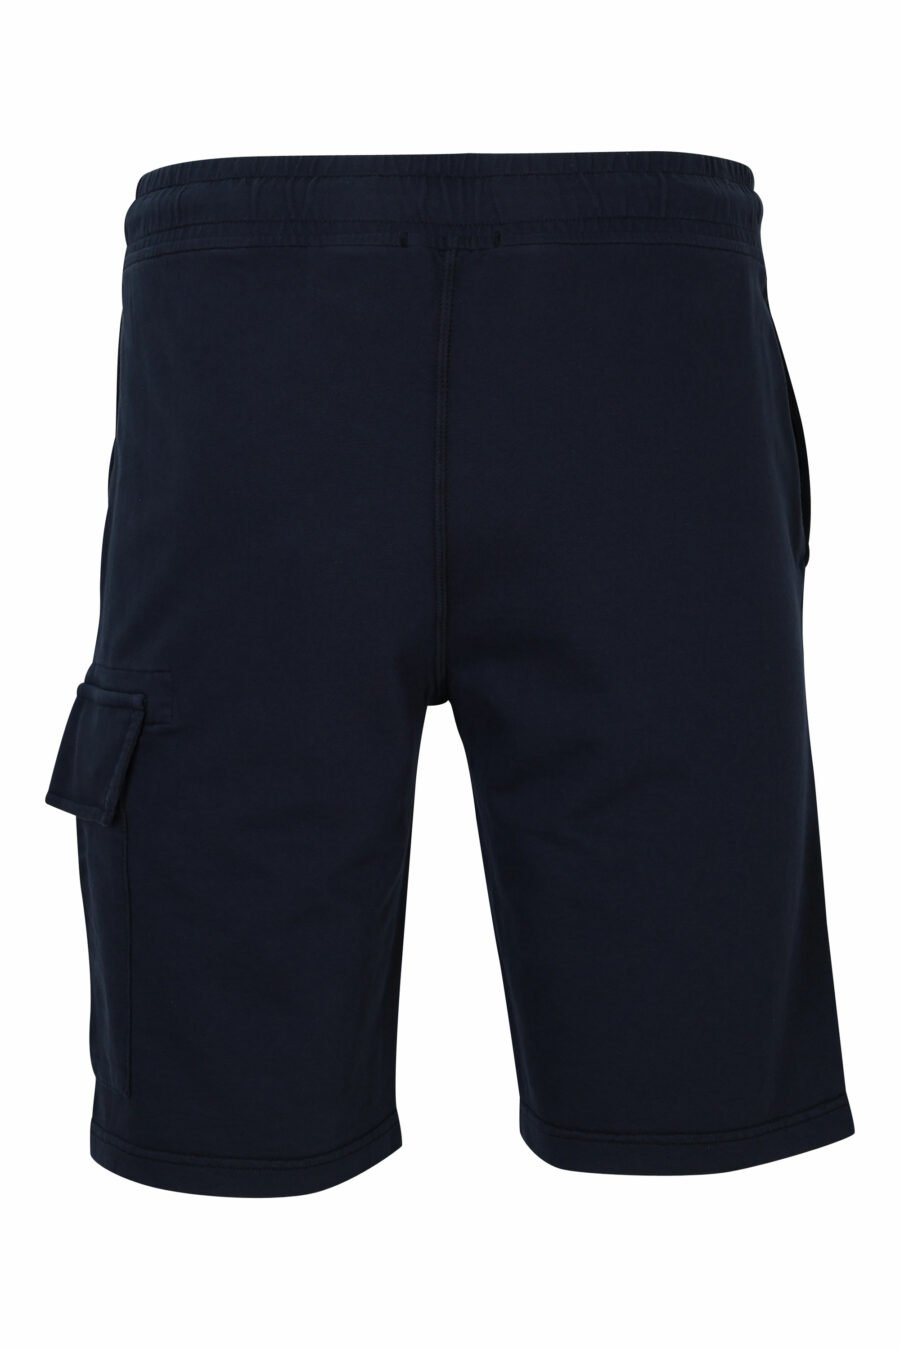 Pantalón de chándal corto azul oscuro estilo cargo con logo lente - 7620943730494 2